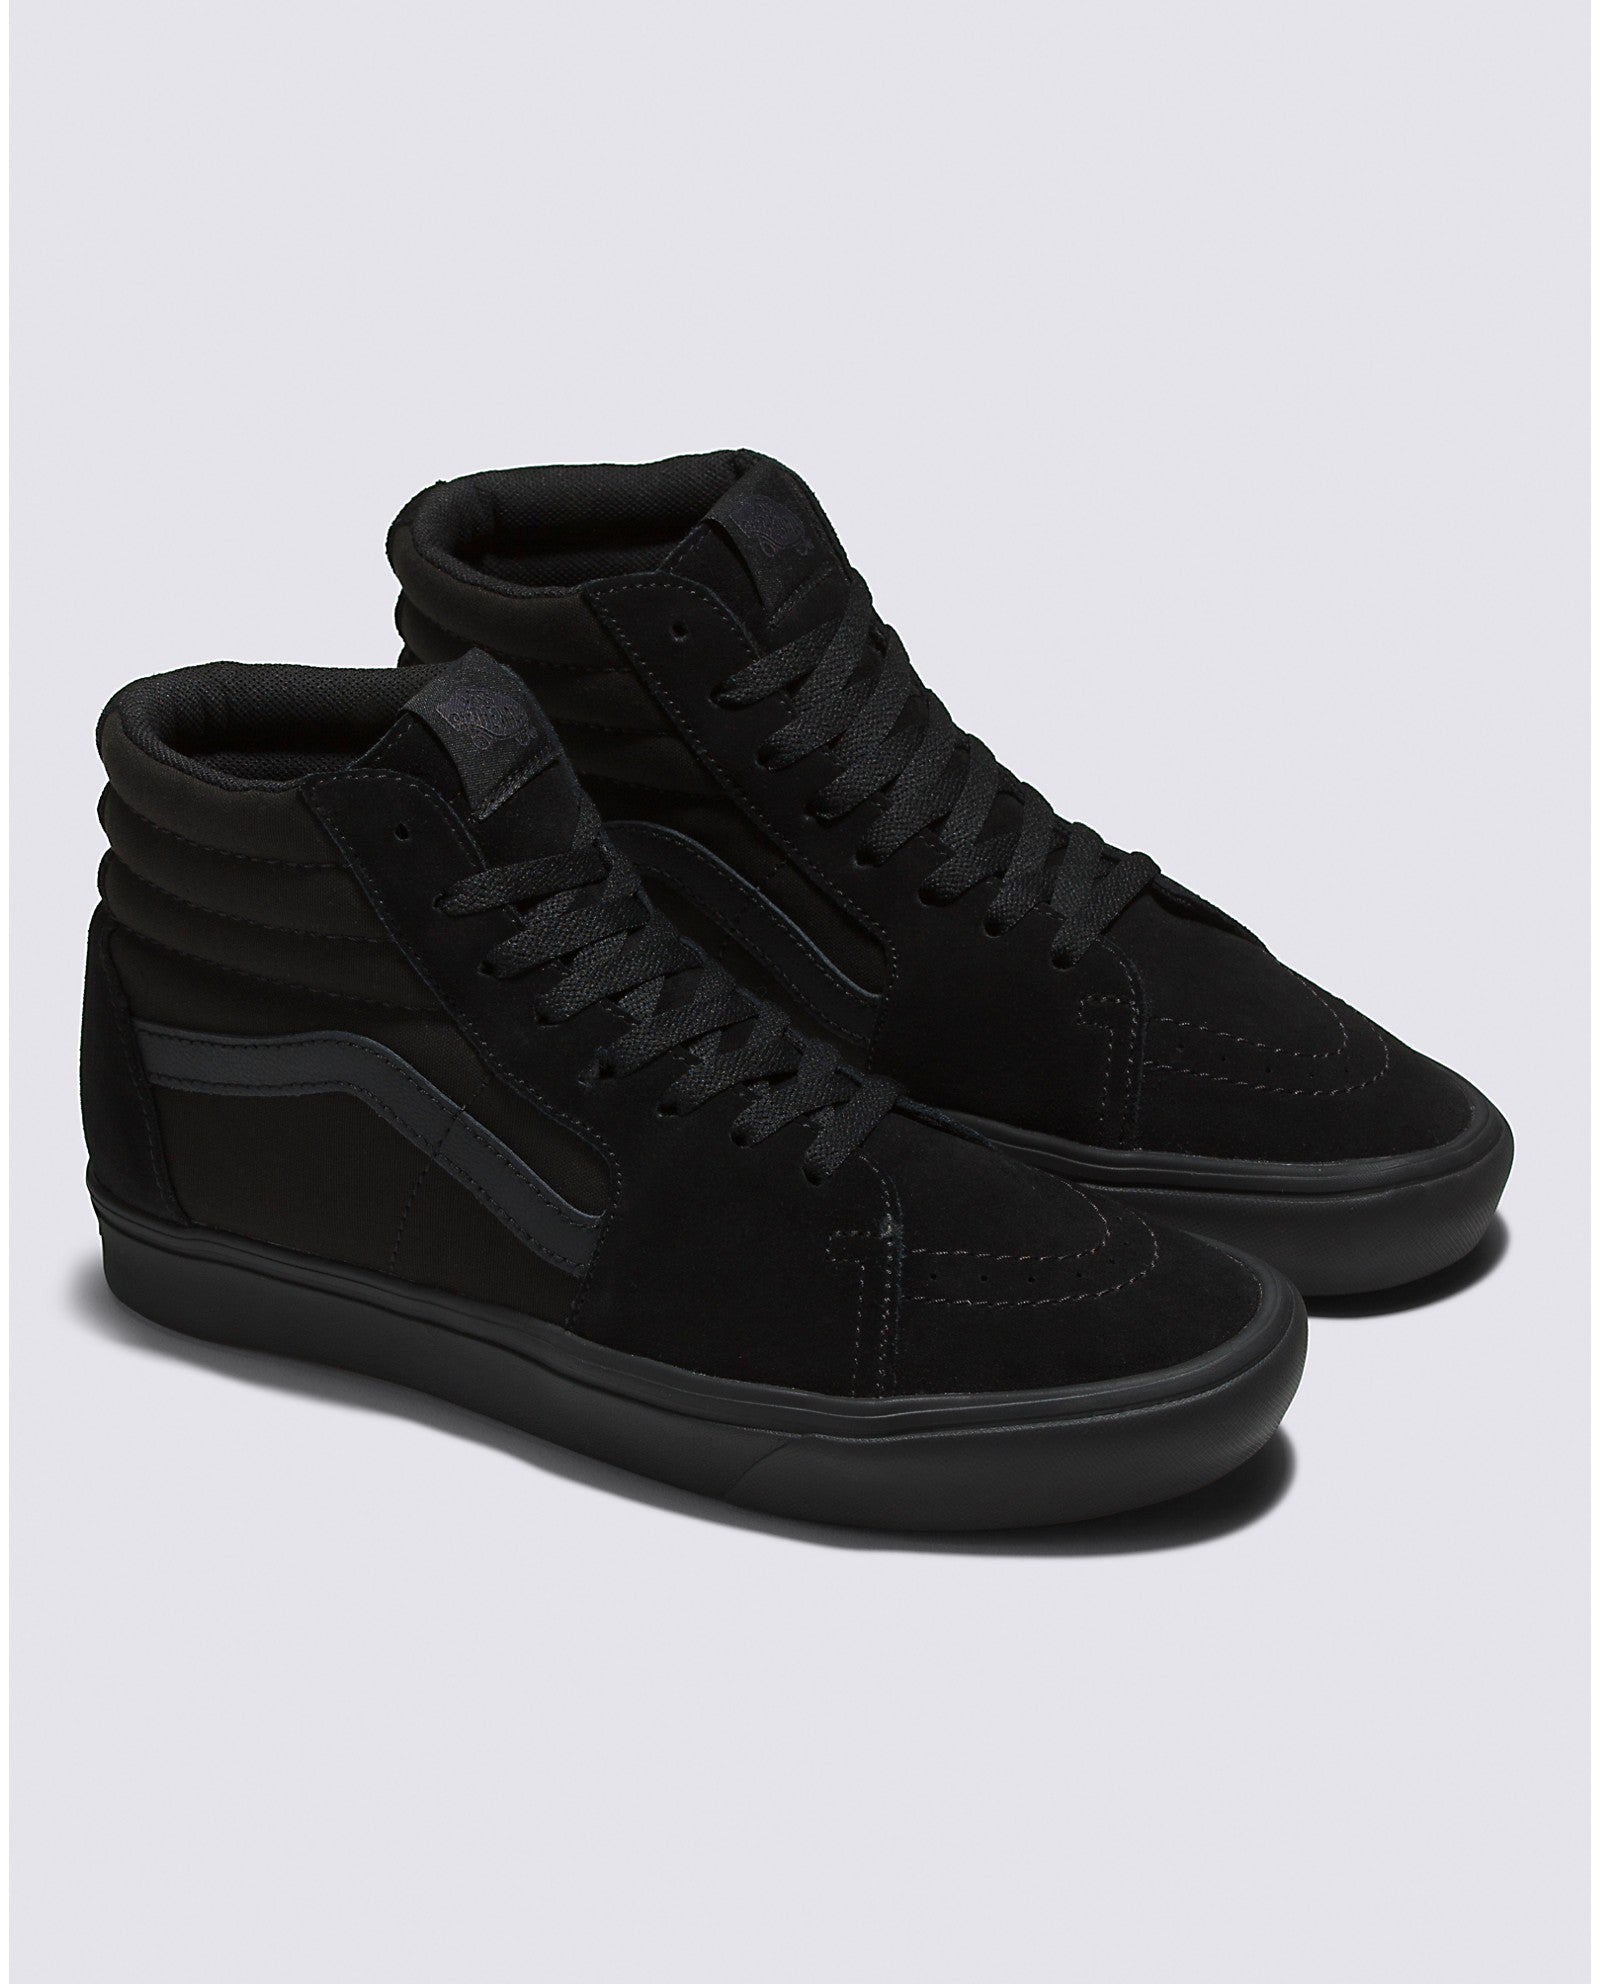 chaussures-comfycush-sk8-hi-all-black-vans-DM2-SHOP-03